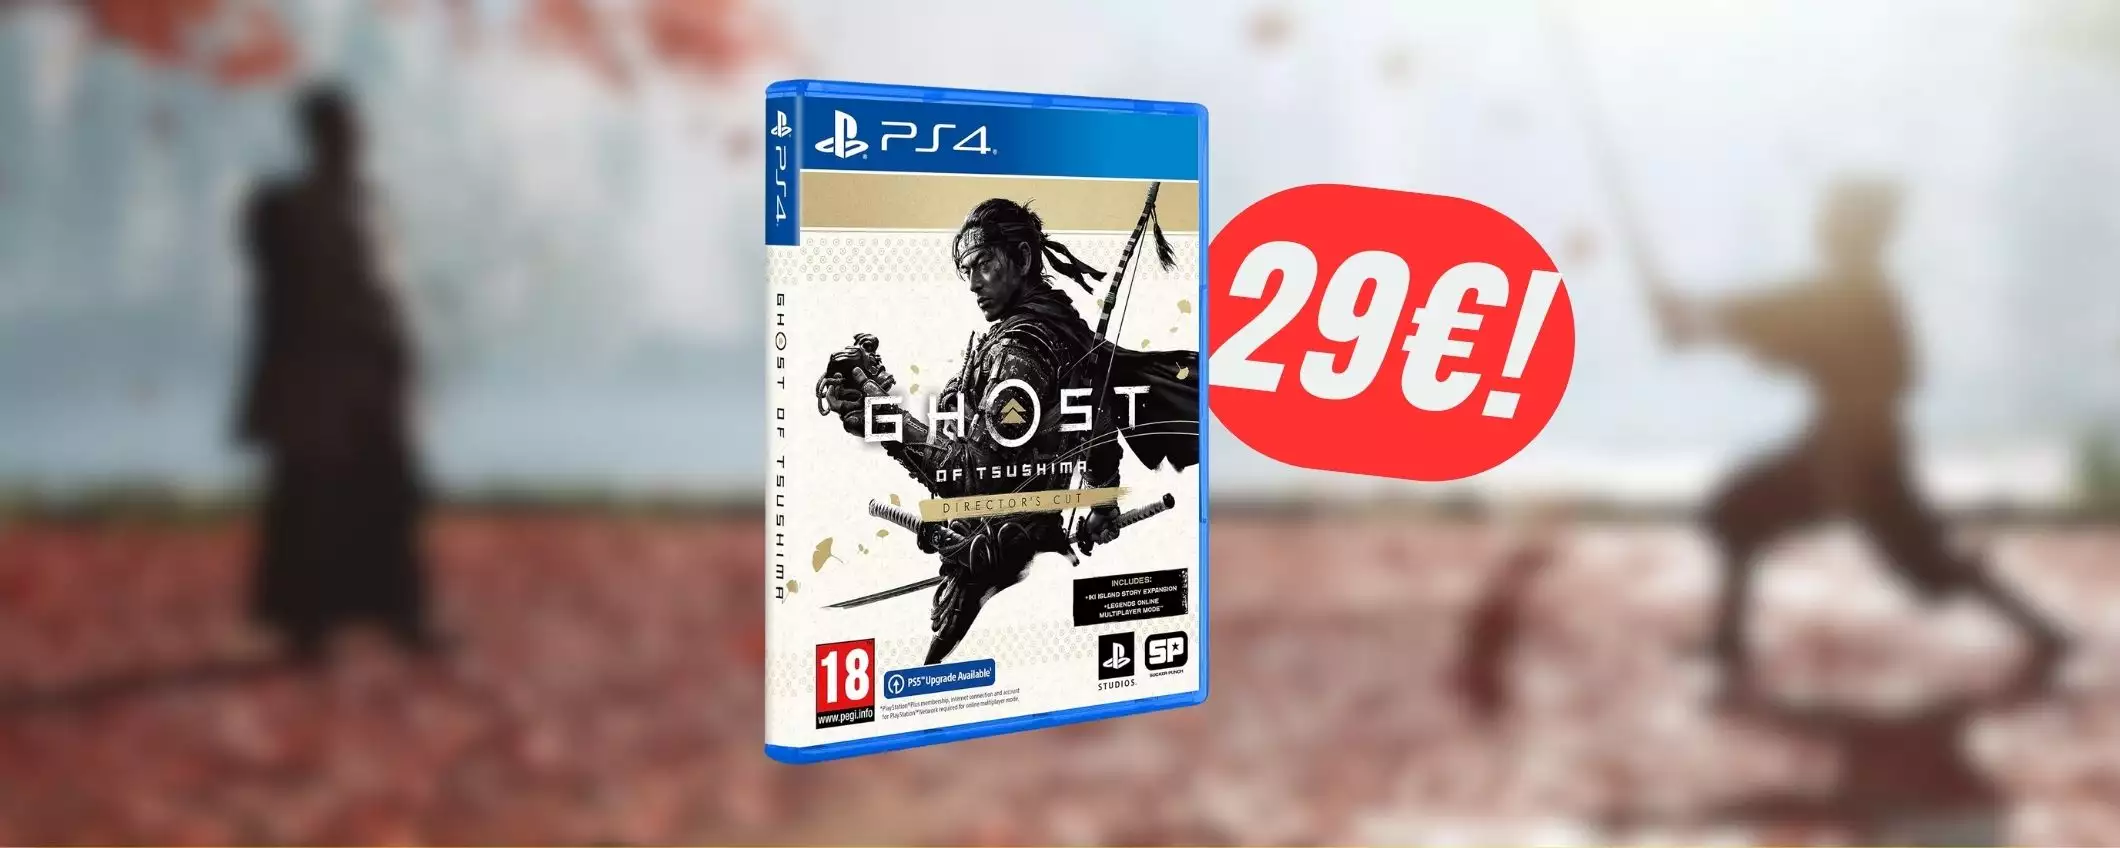 Con 29€ puoi prendere Ghost of Tsushima Director’s Cut per PS4!